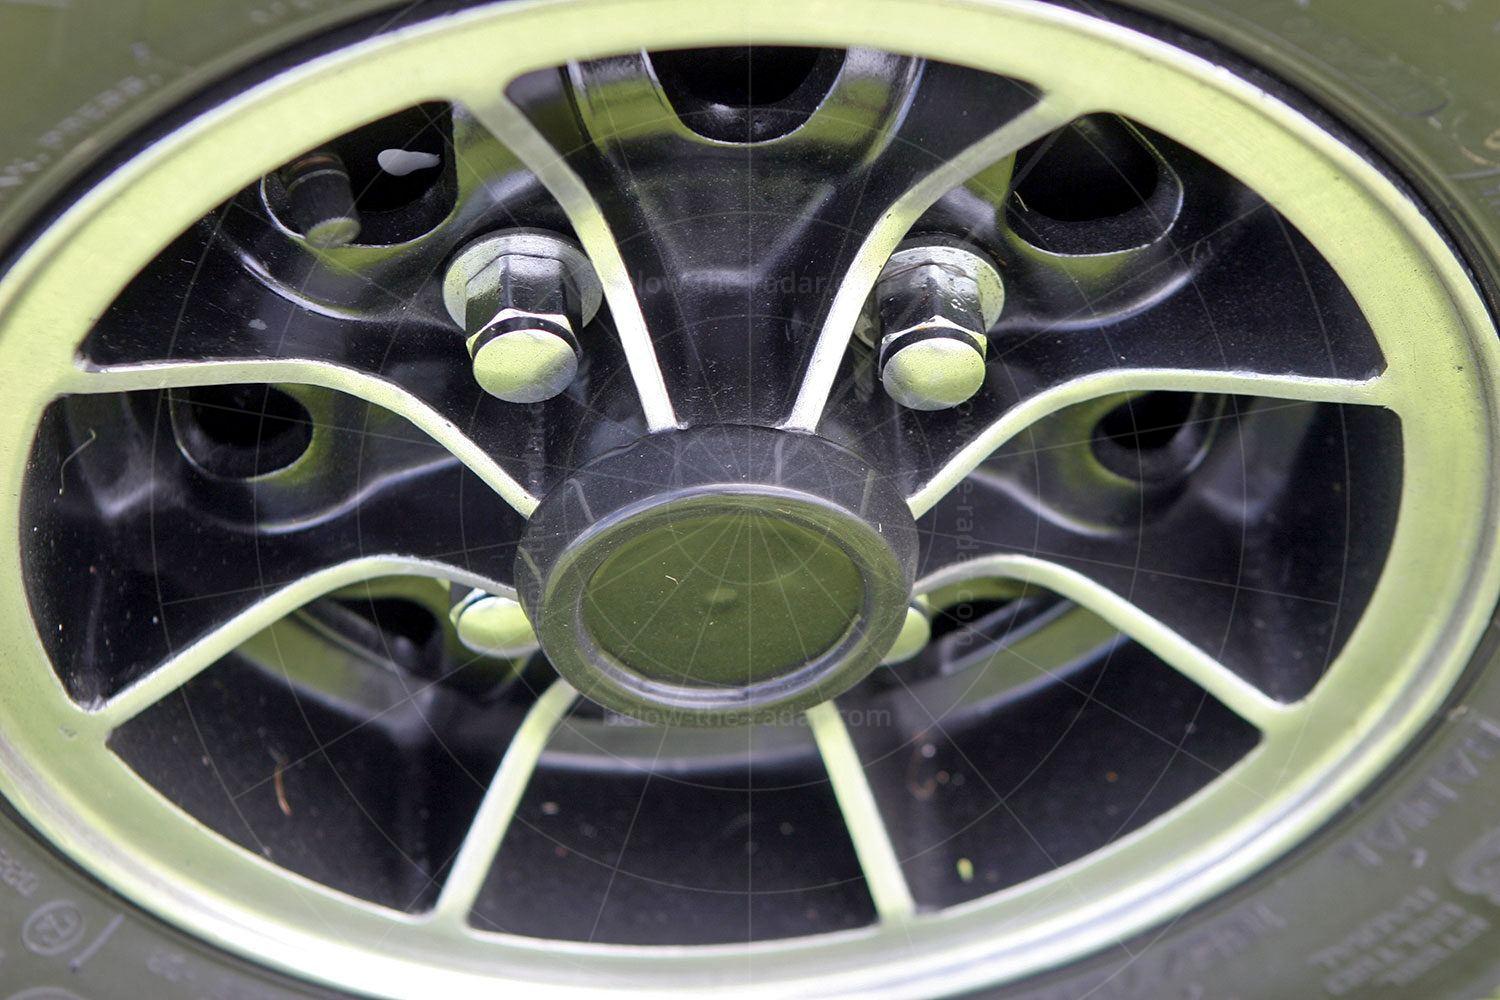 Unipower GT alloy wheel Pic: magiccarpics.co.uk | Unipower GT alloy wheel